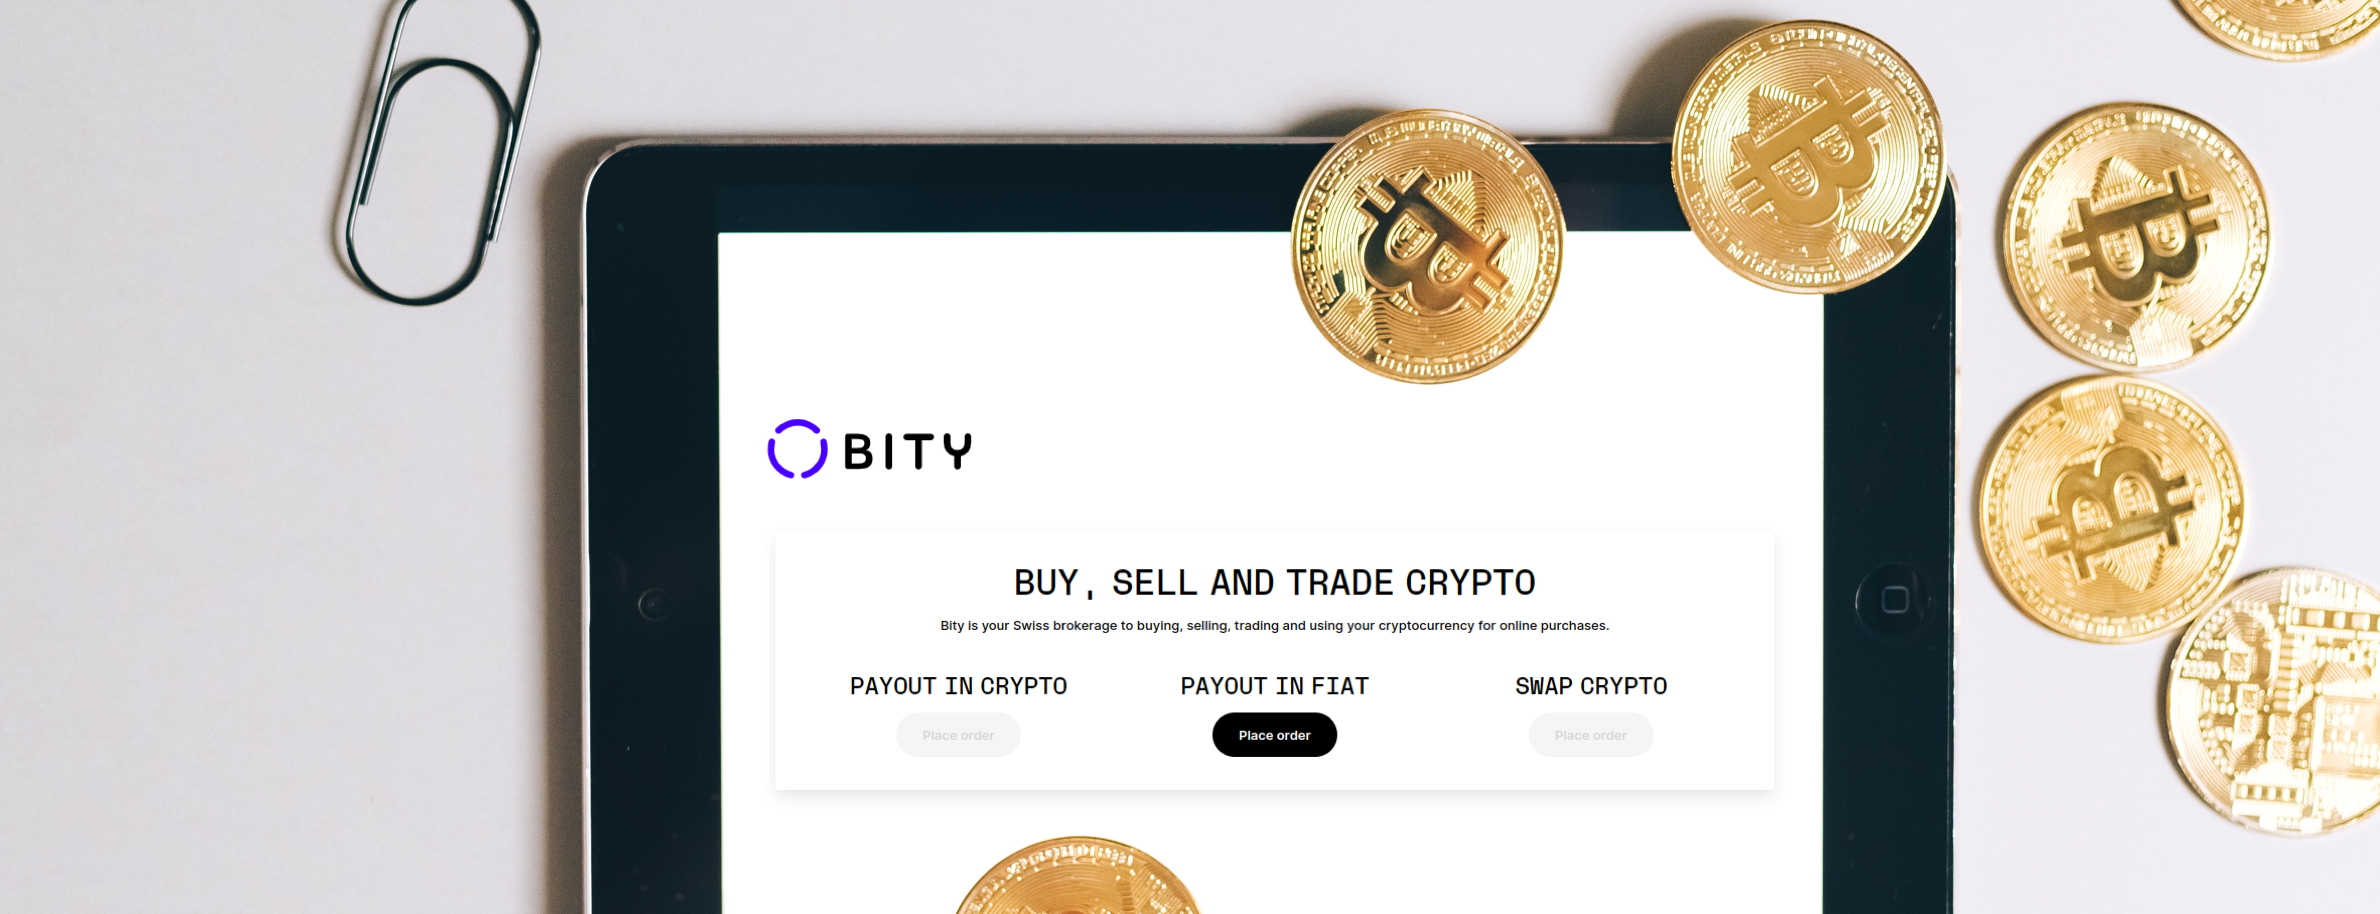 Bity.com - Plattform für Kryptowährungen